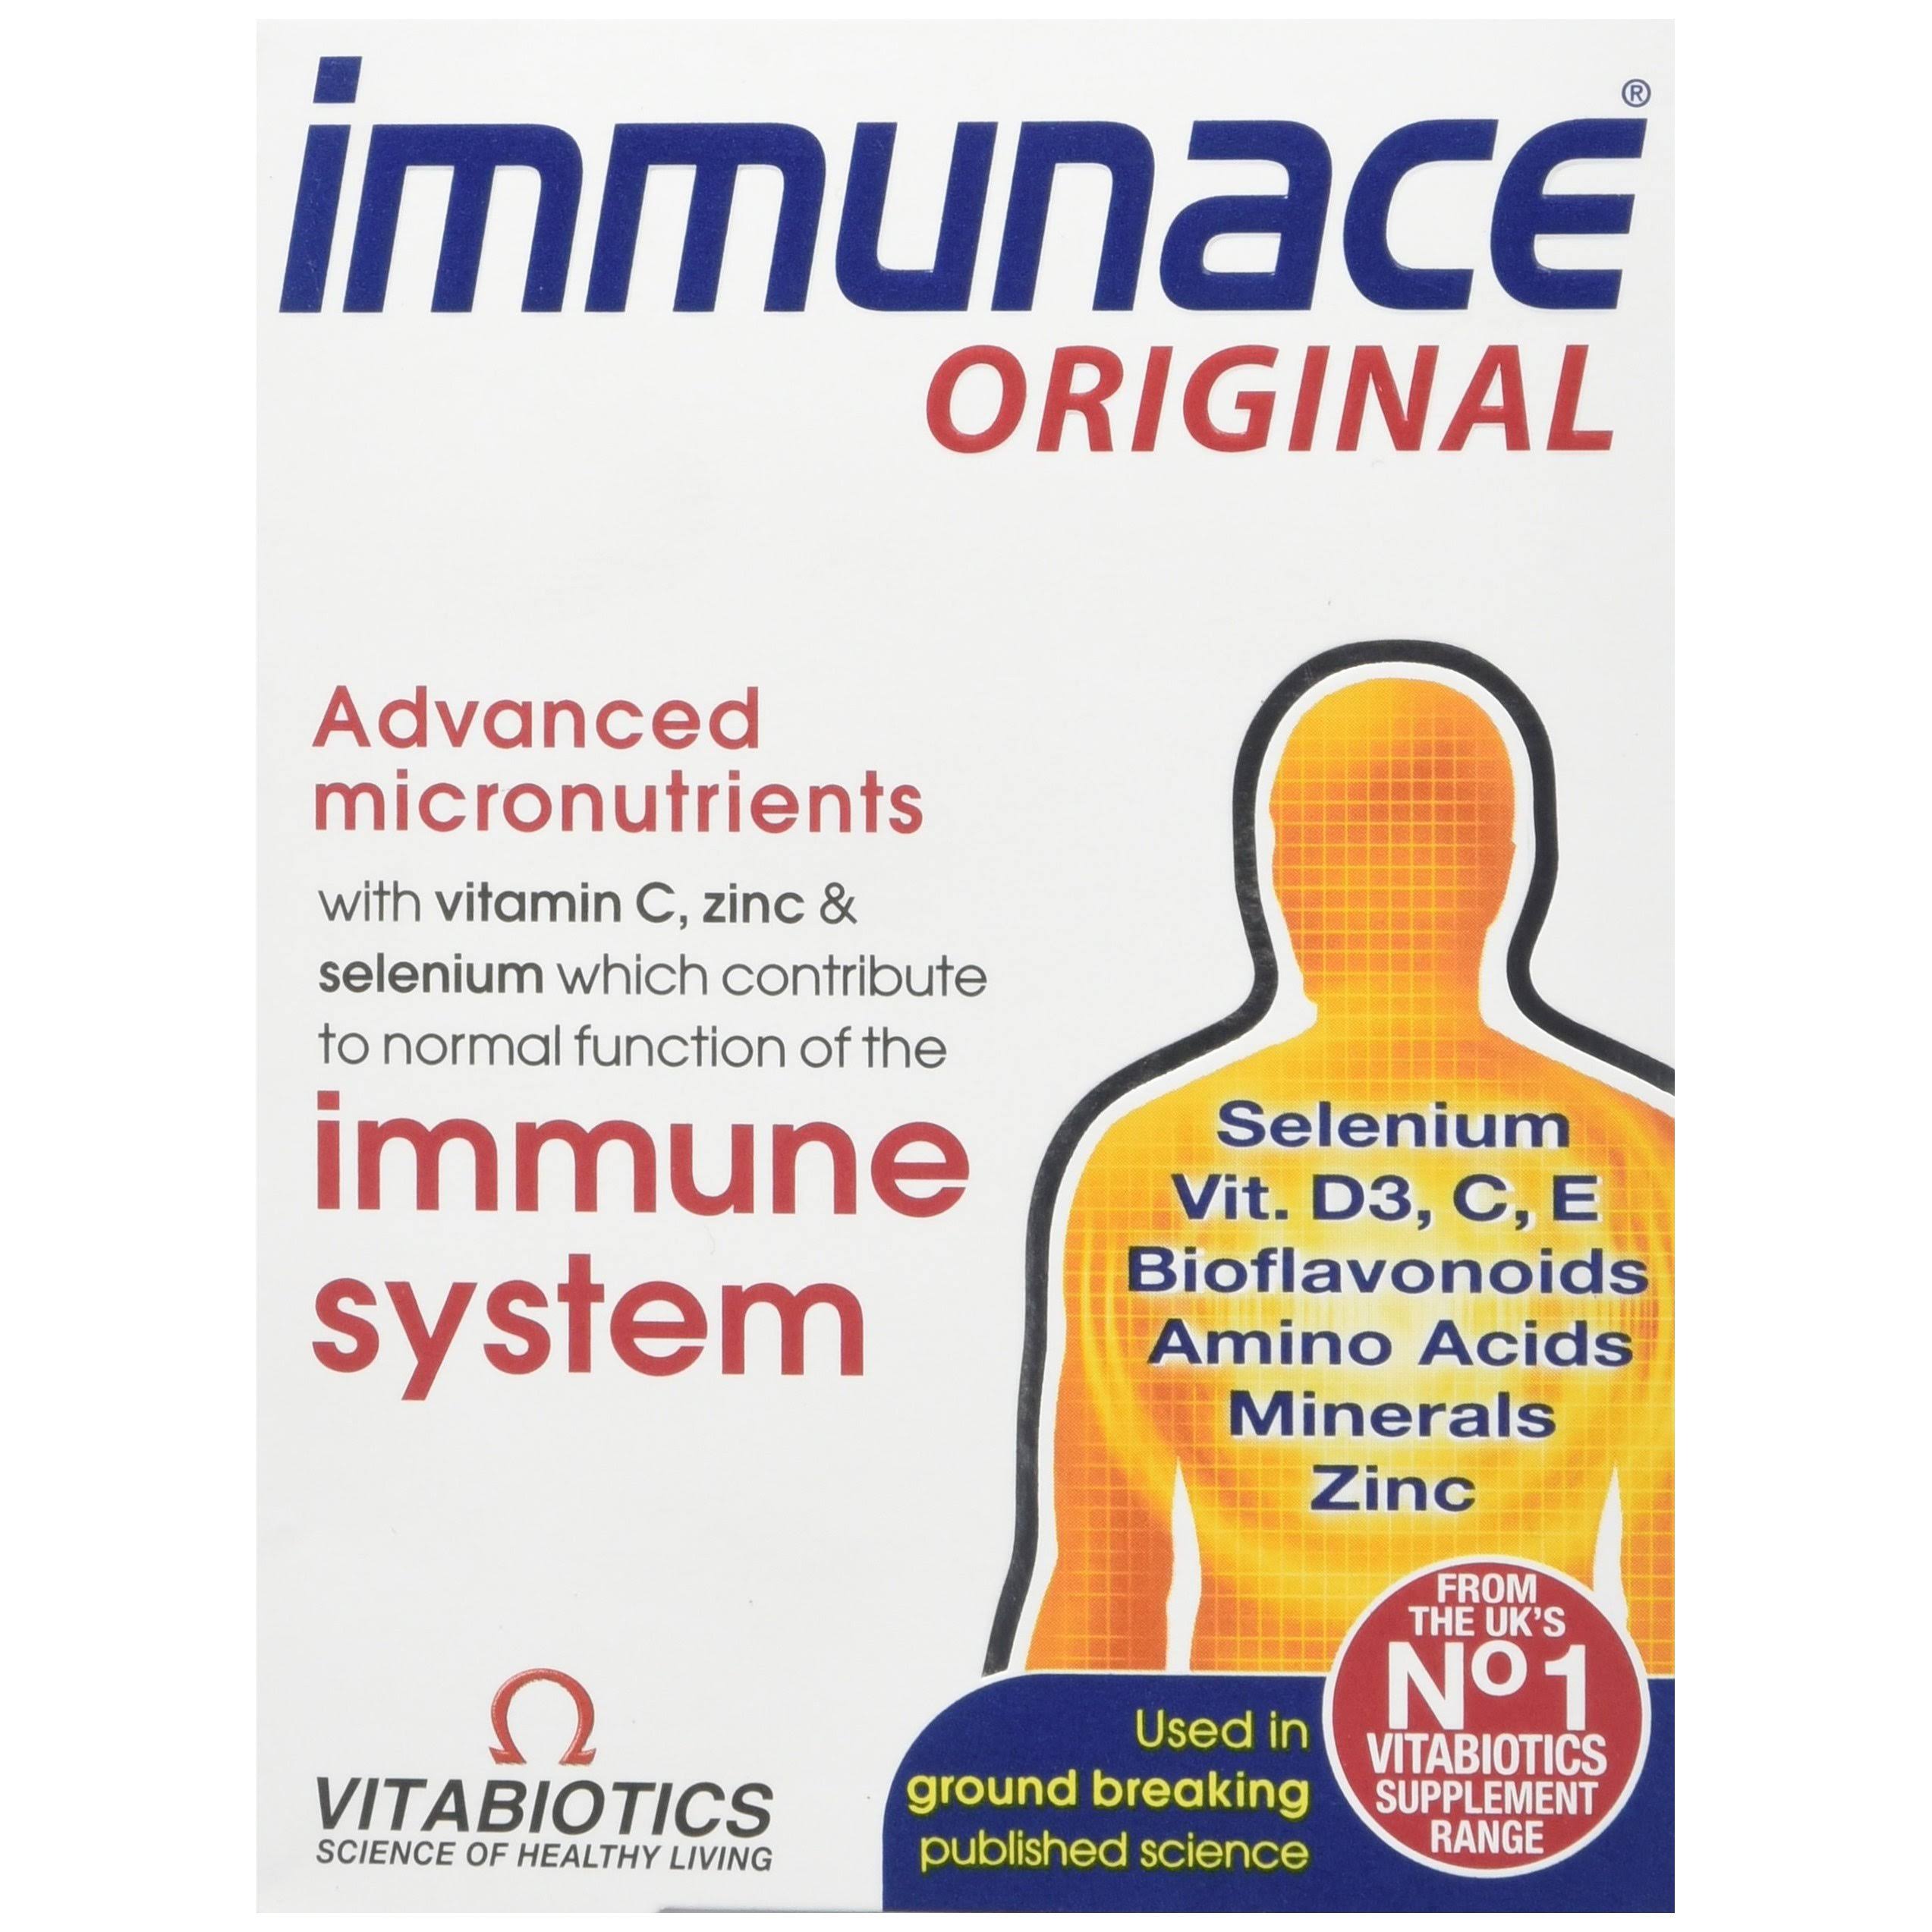 Vitabiotics Immunace Supplement - 30 Tablets